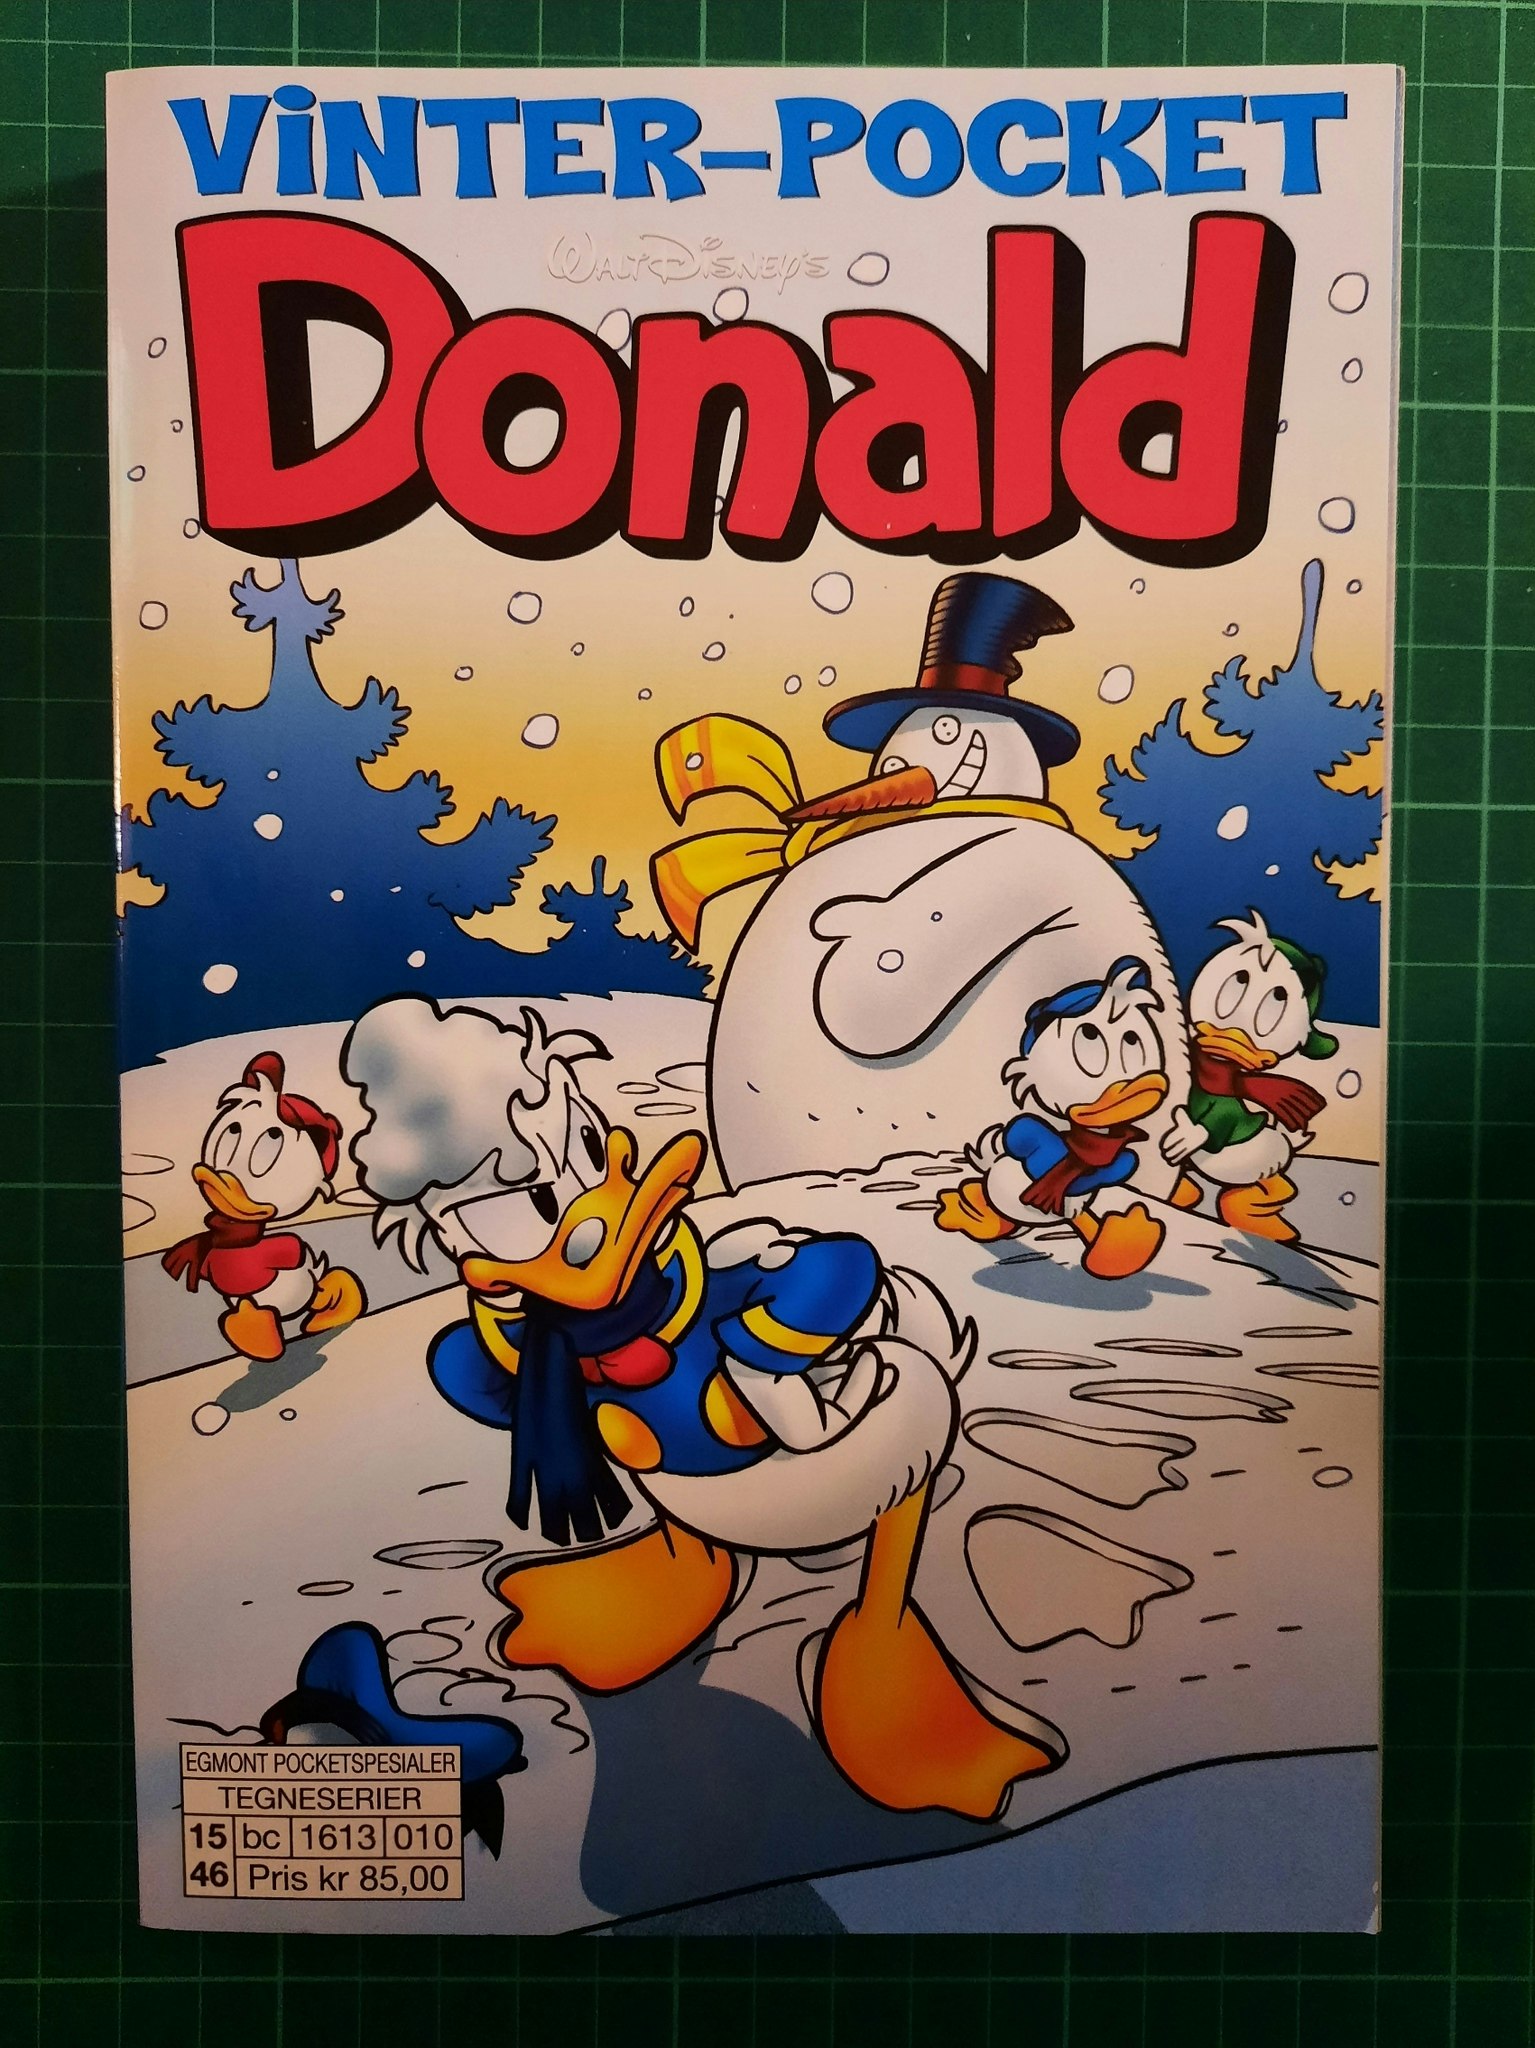 Vinter-pocket Donald 2015